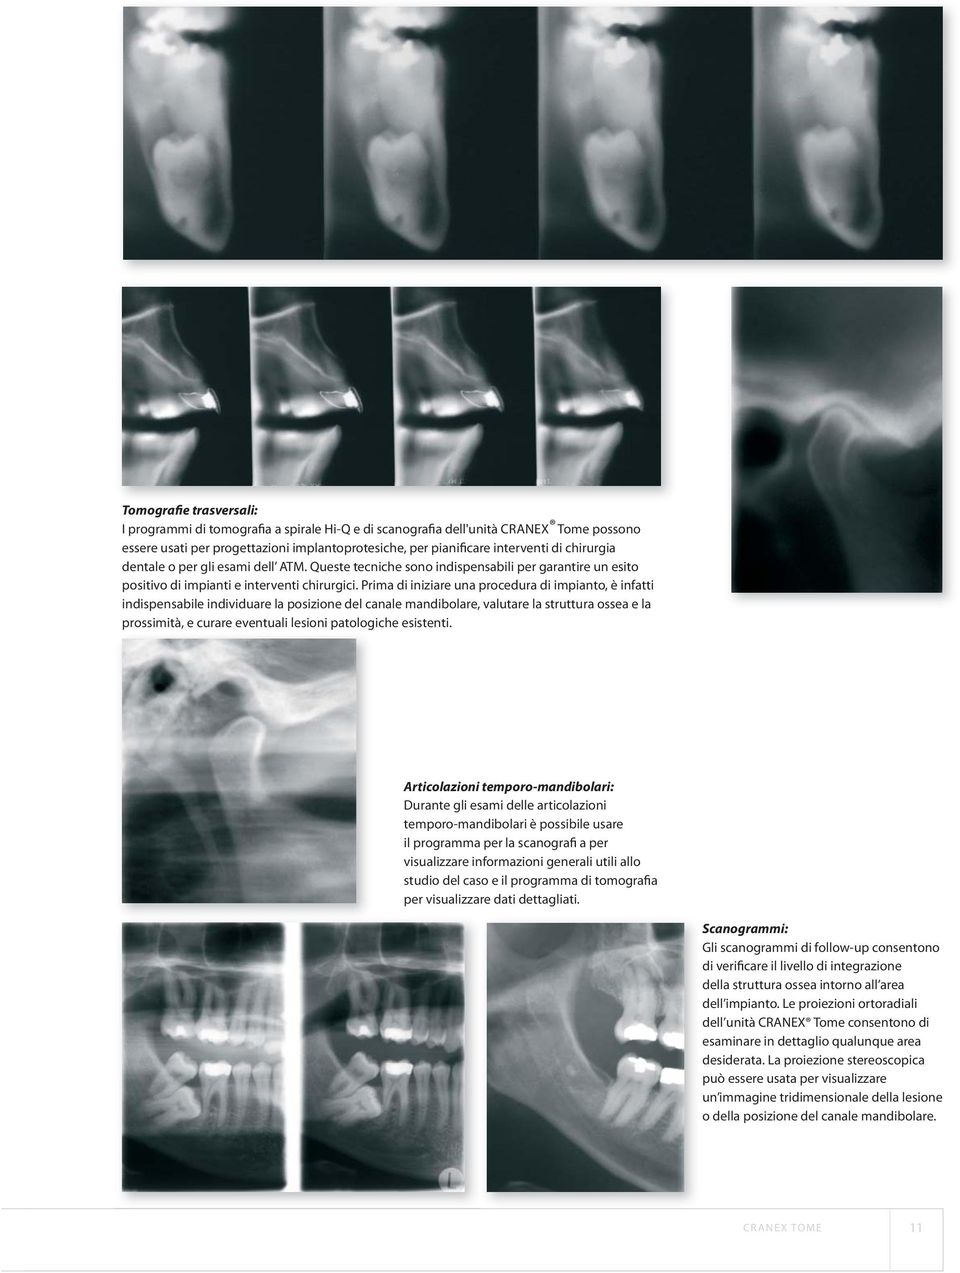 Prima di iniziare una procedura di impianto, è infatti indispensabile individuare la posizione del canale mandibolare, valutare la struttura ossea e la prossimità, e curare eventuali lesioni